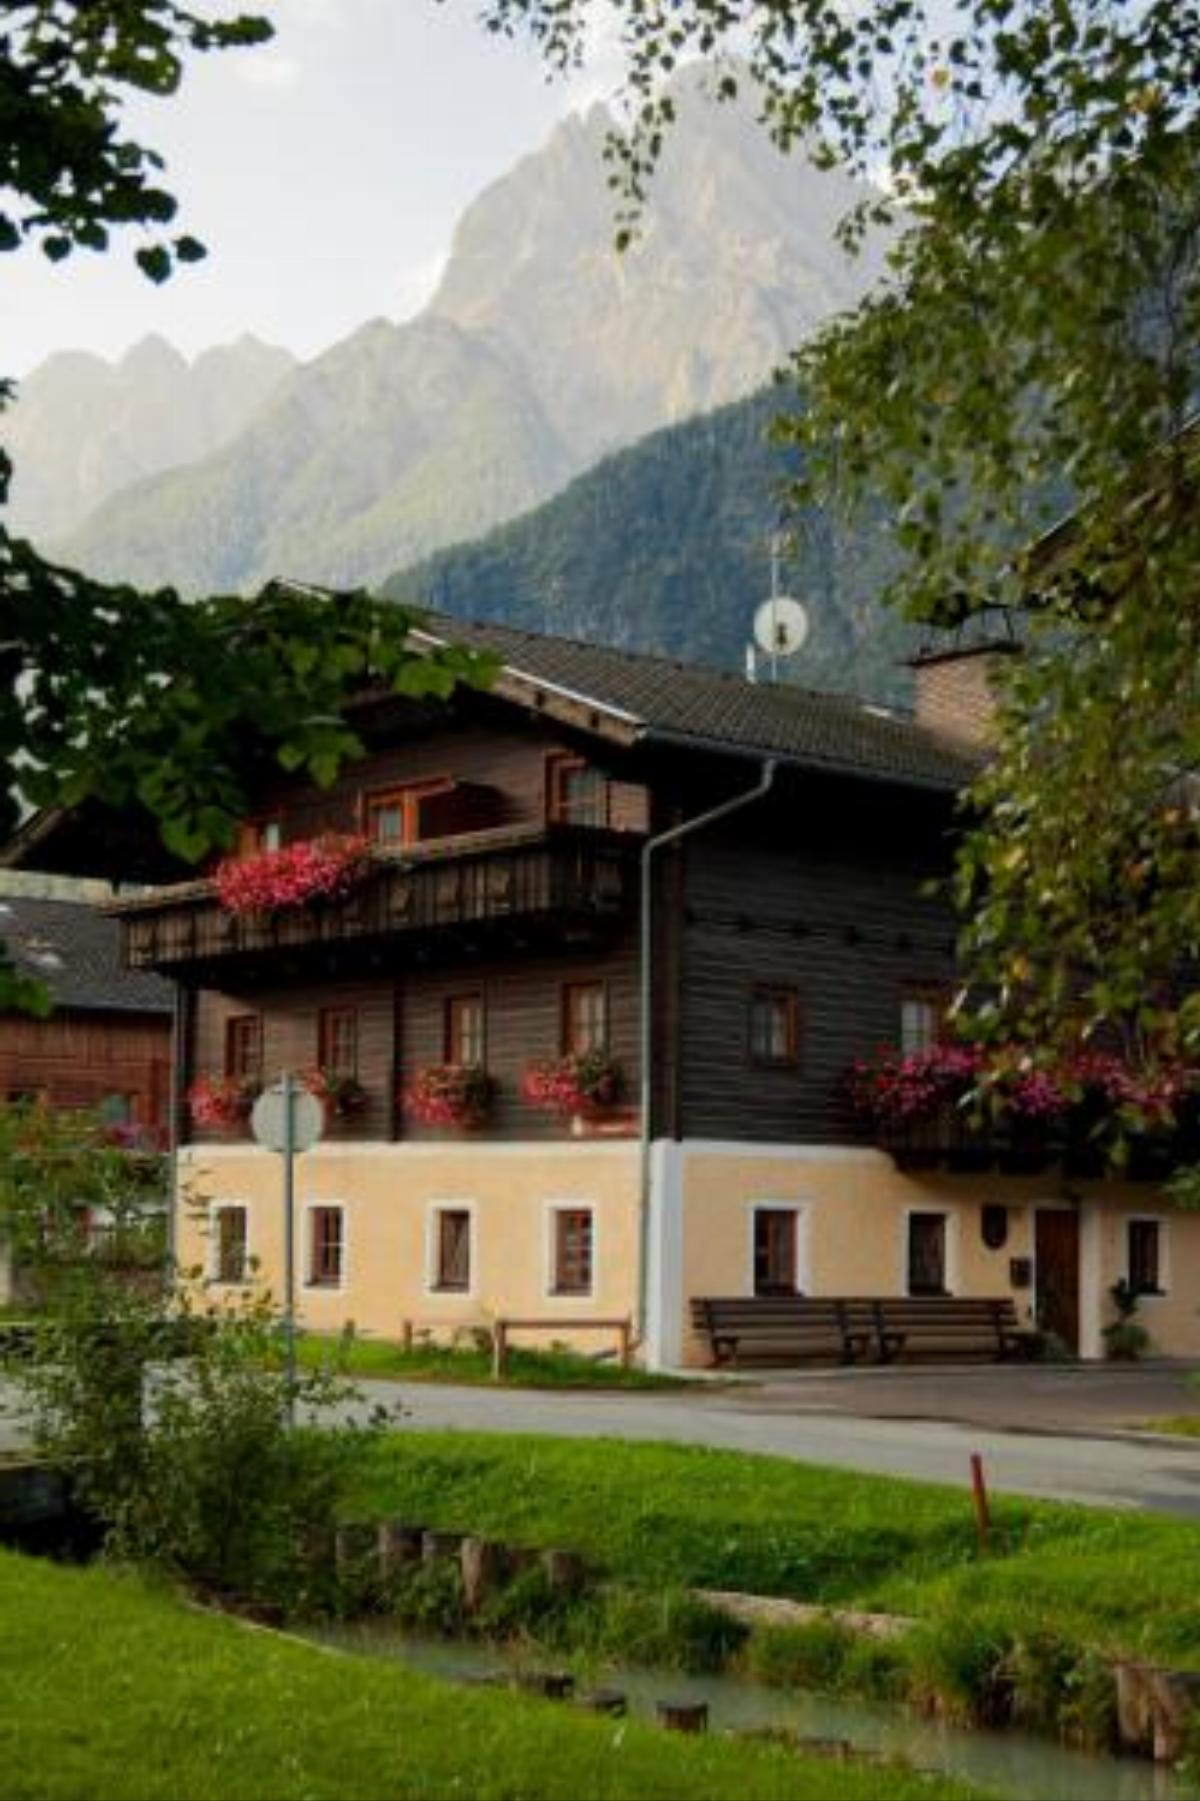 Freundhof Hotel Amlach Austria